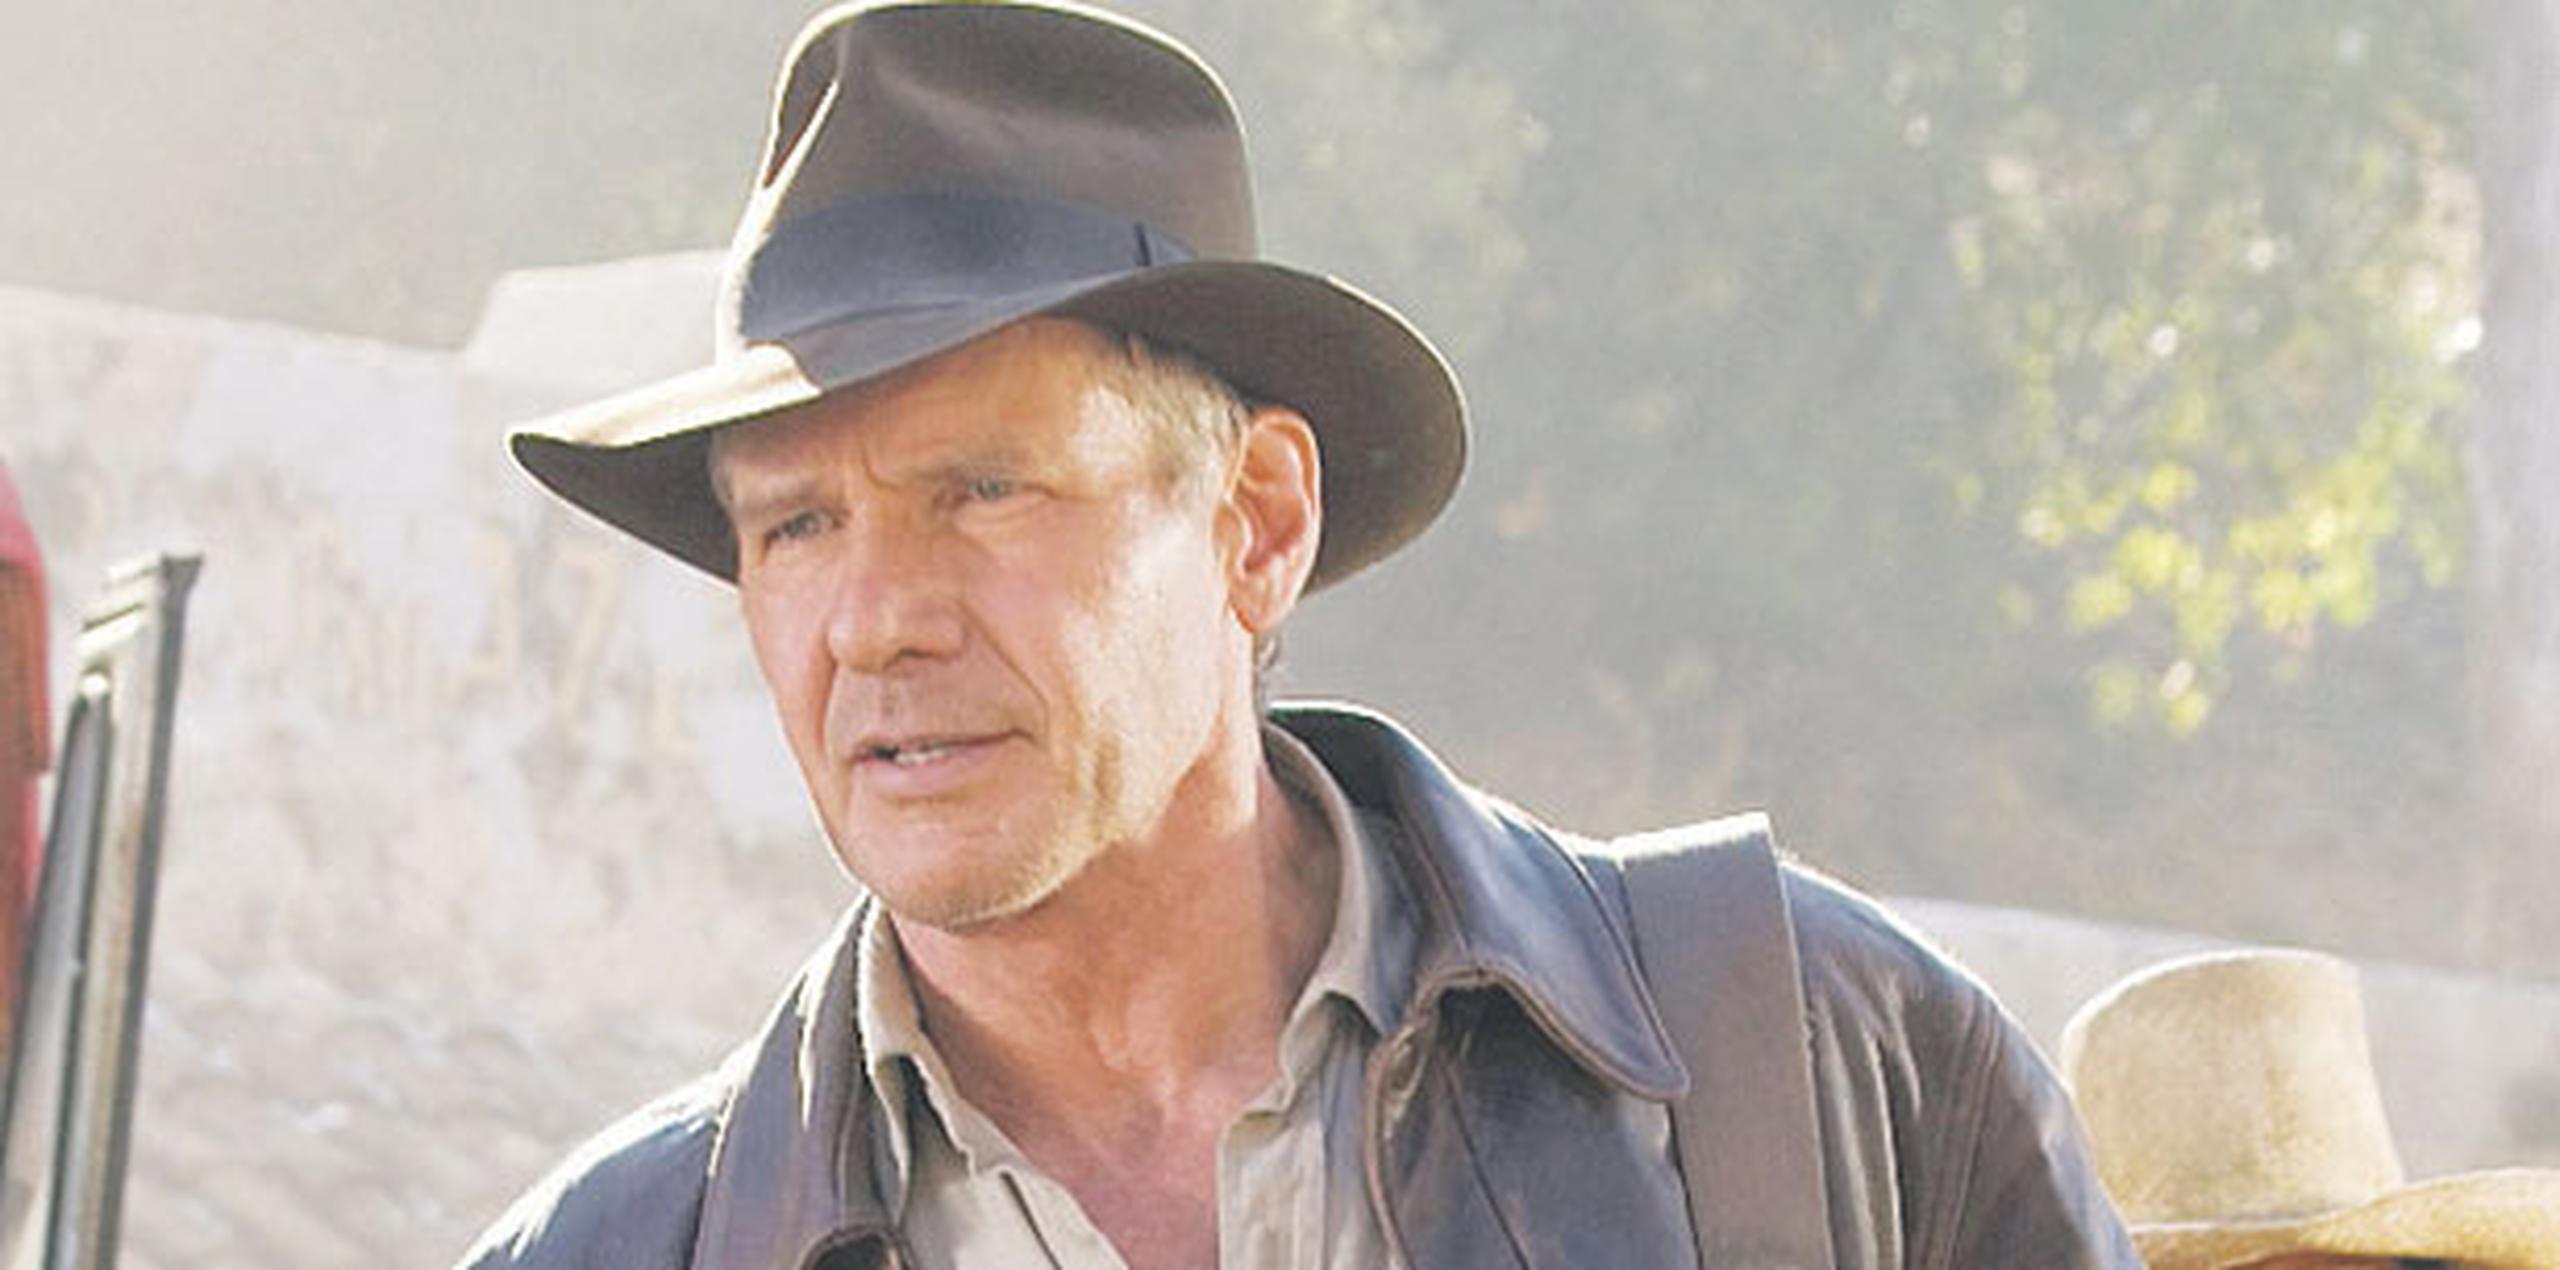 Spielberg, de 71 años, también tiene varias películas en su lista antes de "Indiana Jones", incluyendo una nueva versión de "West Side Story". (Archivo)